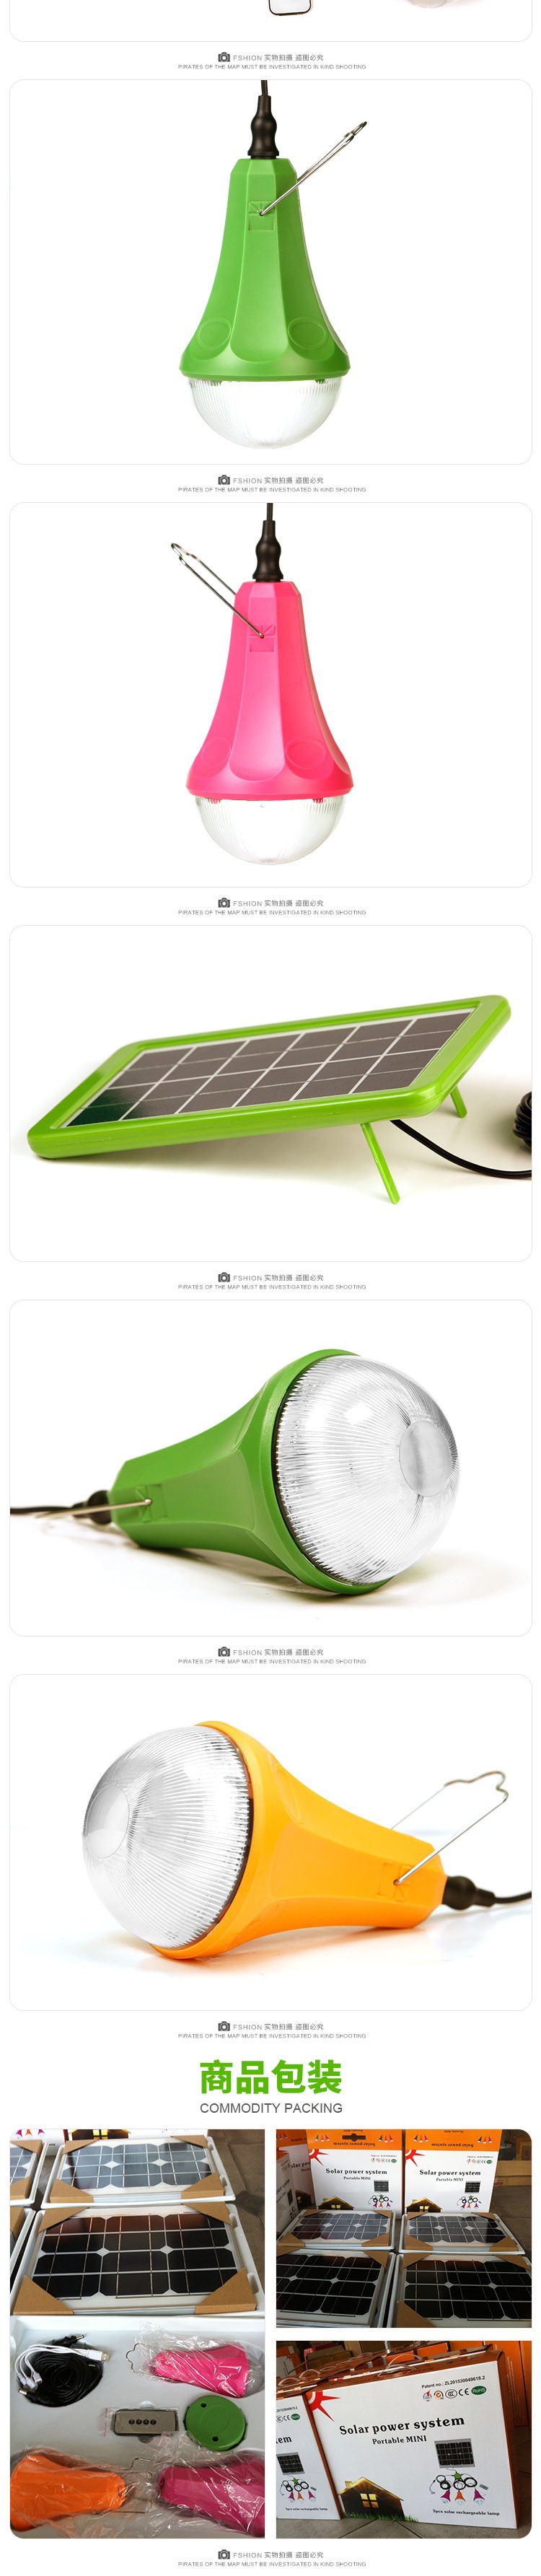 新疆厂家直销一拖二6瓦太阳能灯 锂电池充电小夜灯家用应急照明灯示例图13